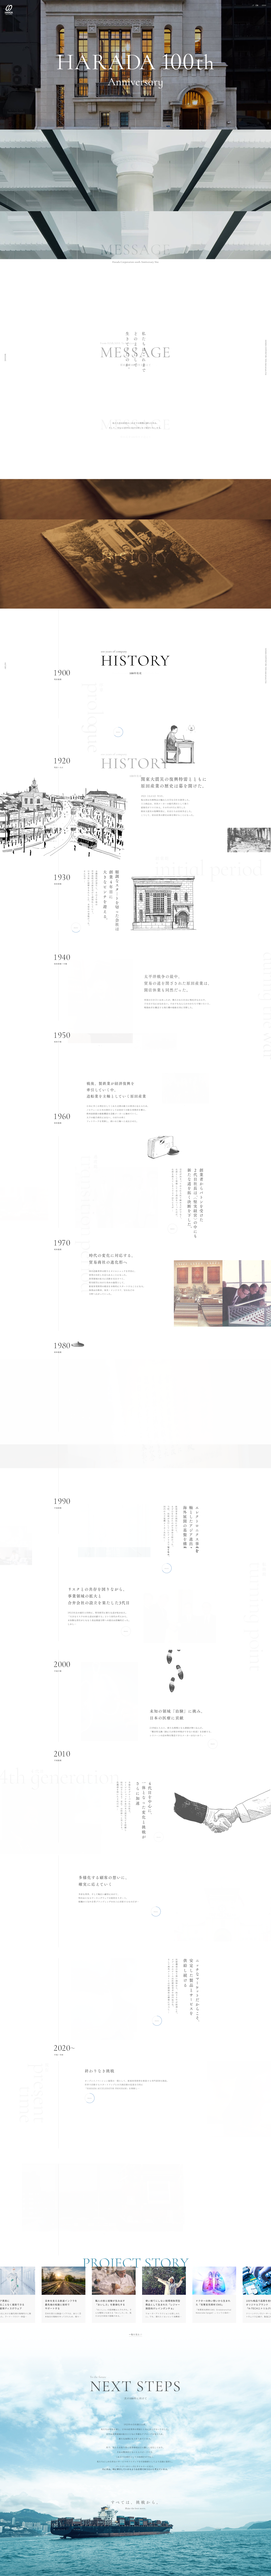 原田産業 100周年記念サイト